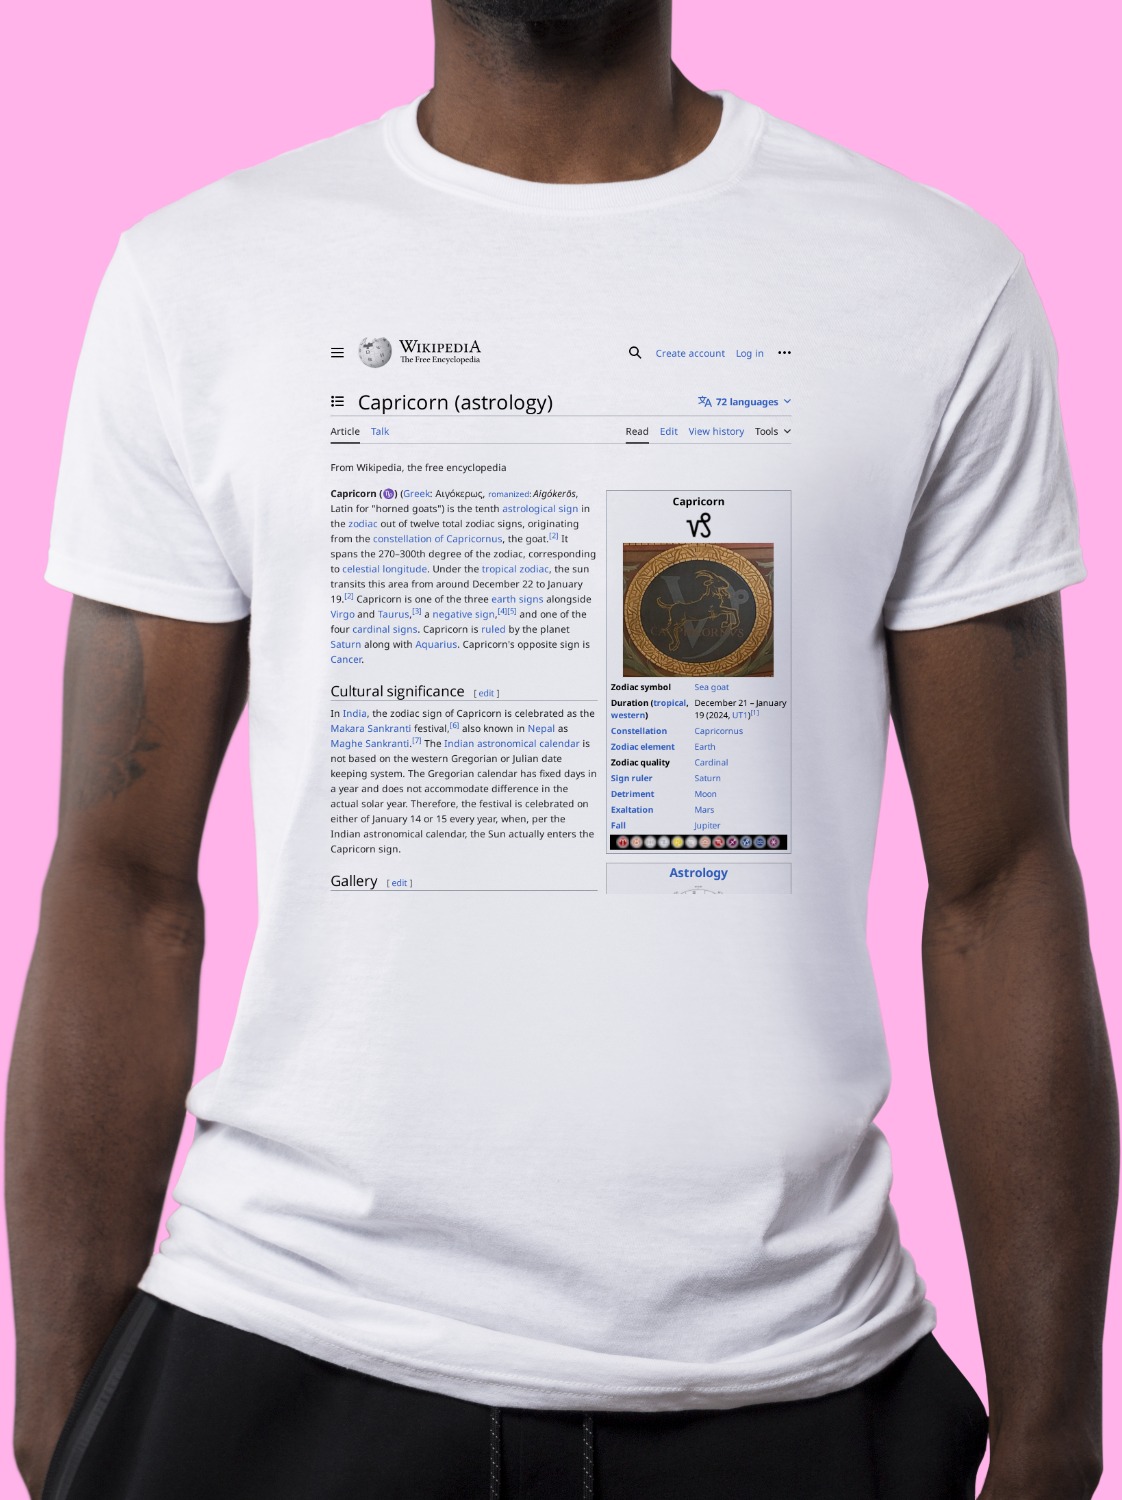 Capricorn_(astrology) Wikipedia Shirt